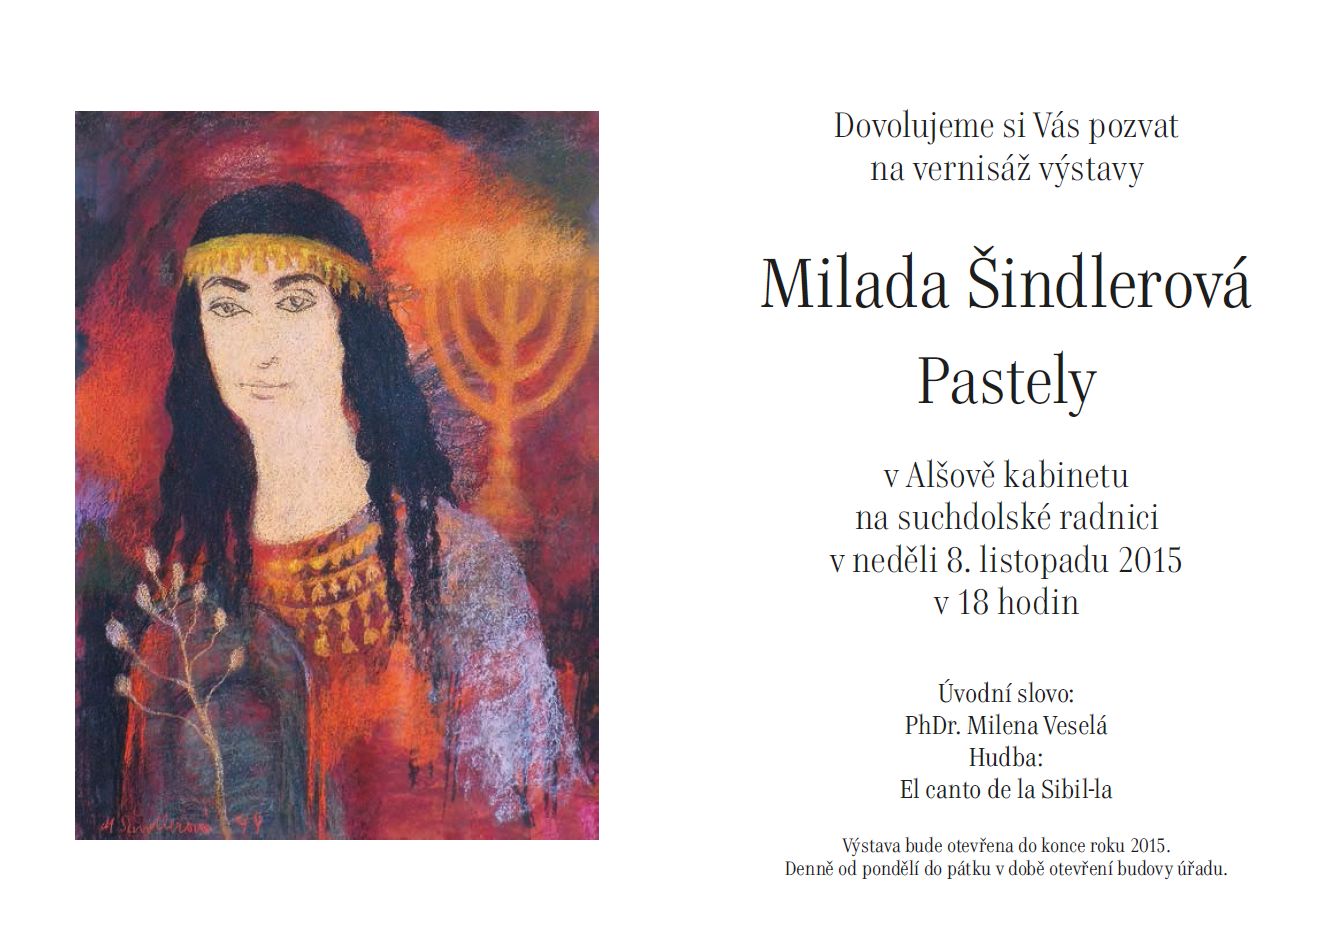 Výstava Milada Šindlerová, Pastely, 8.11.2015